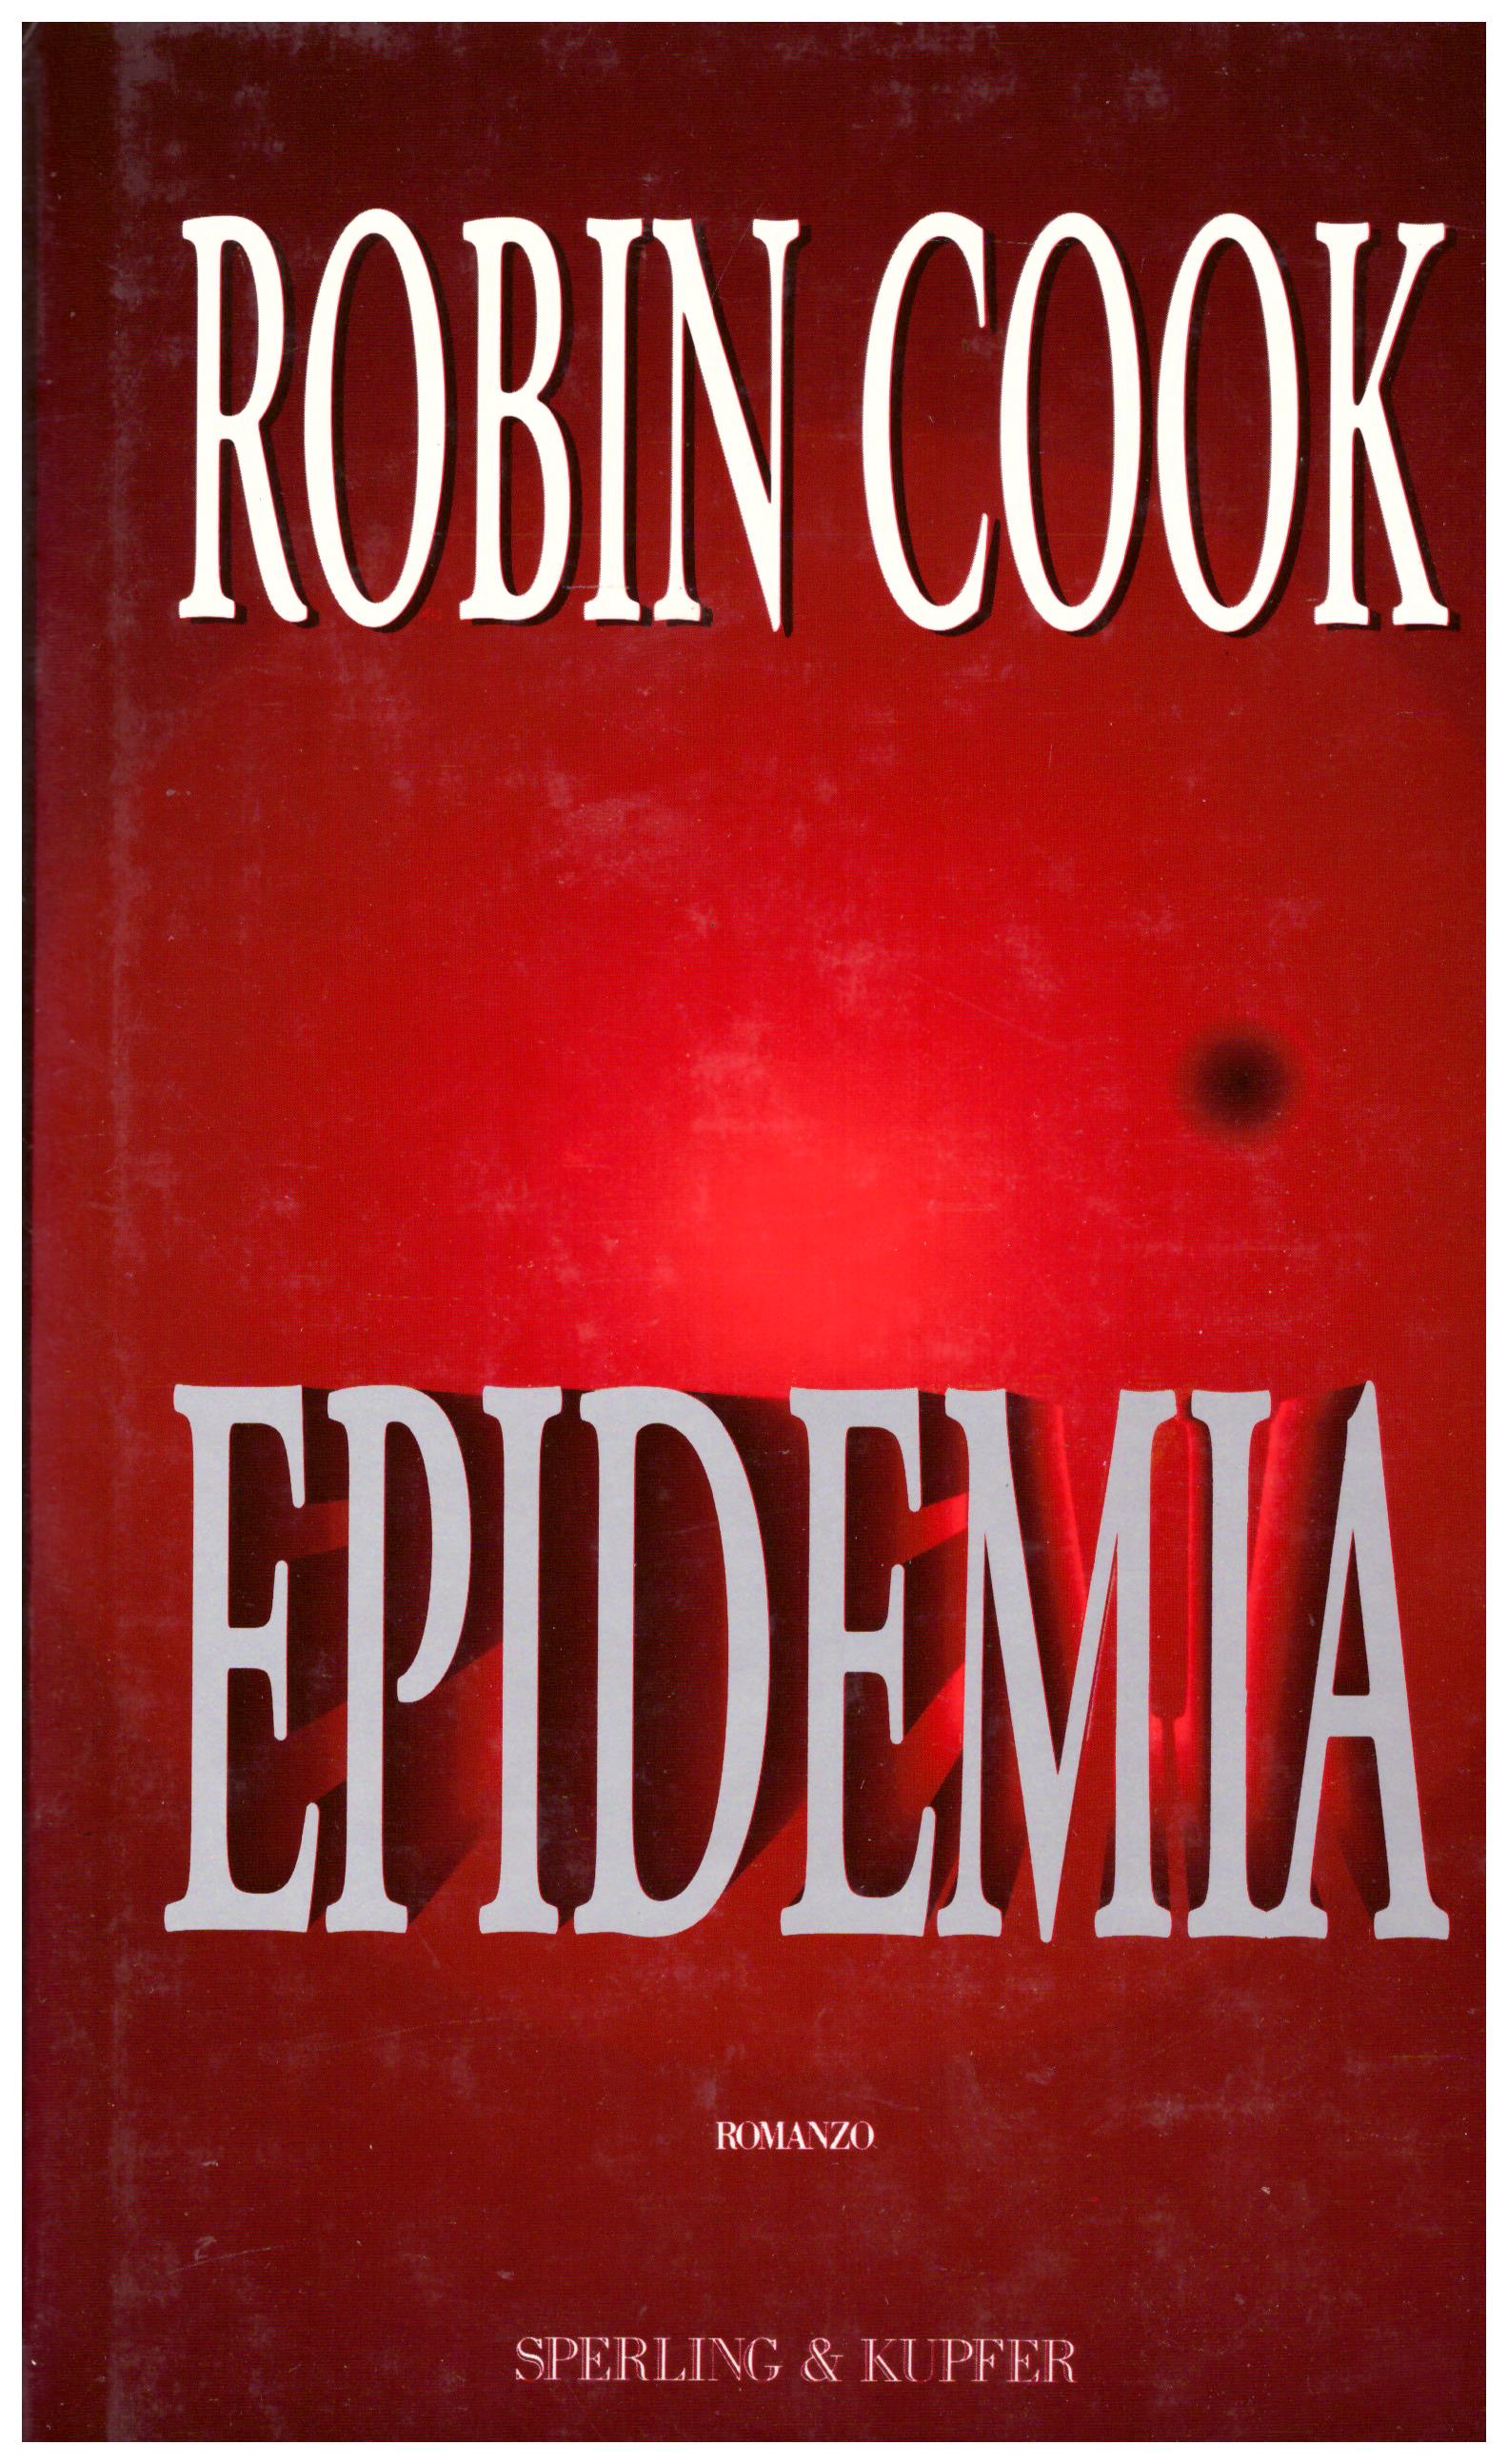 Titolo: Epidemia Autore: Robin Cook Editore: Sperling e kupfer, 1997